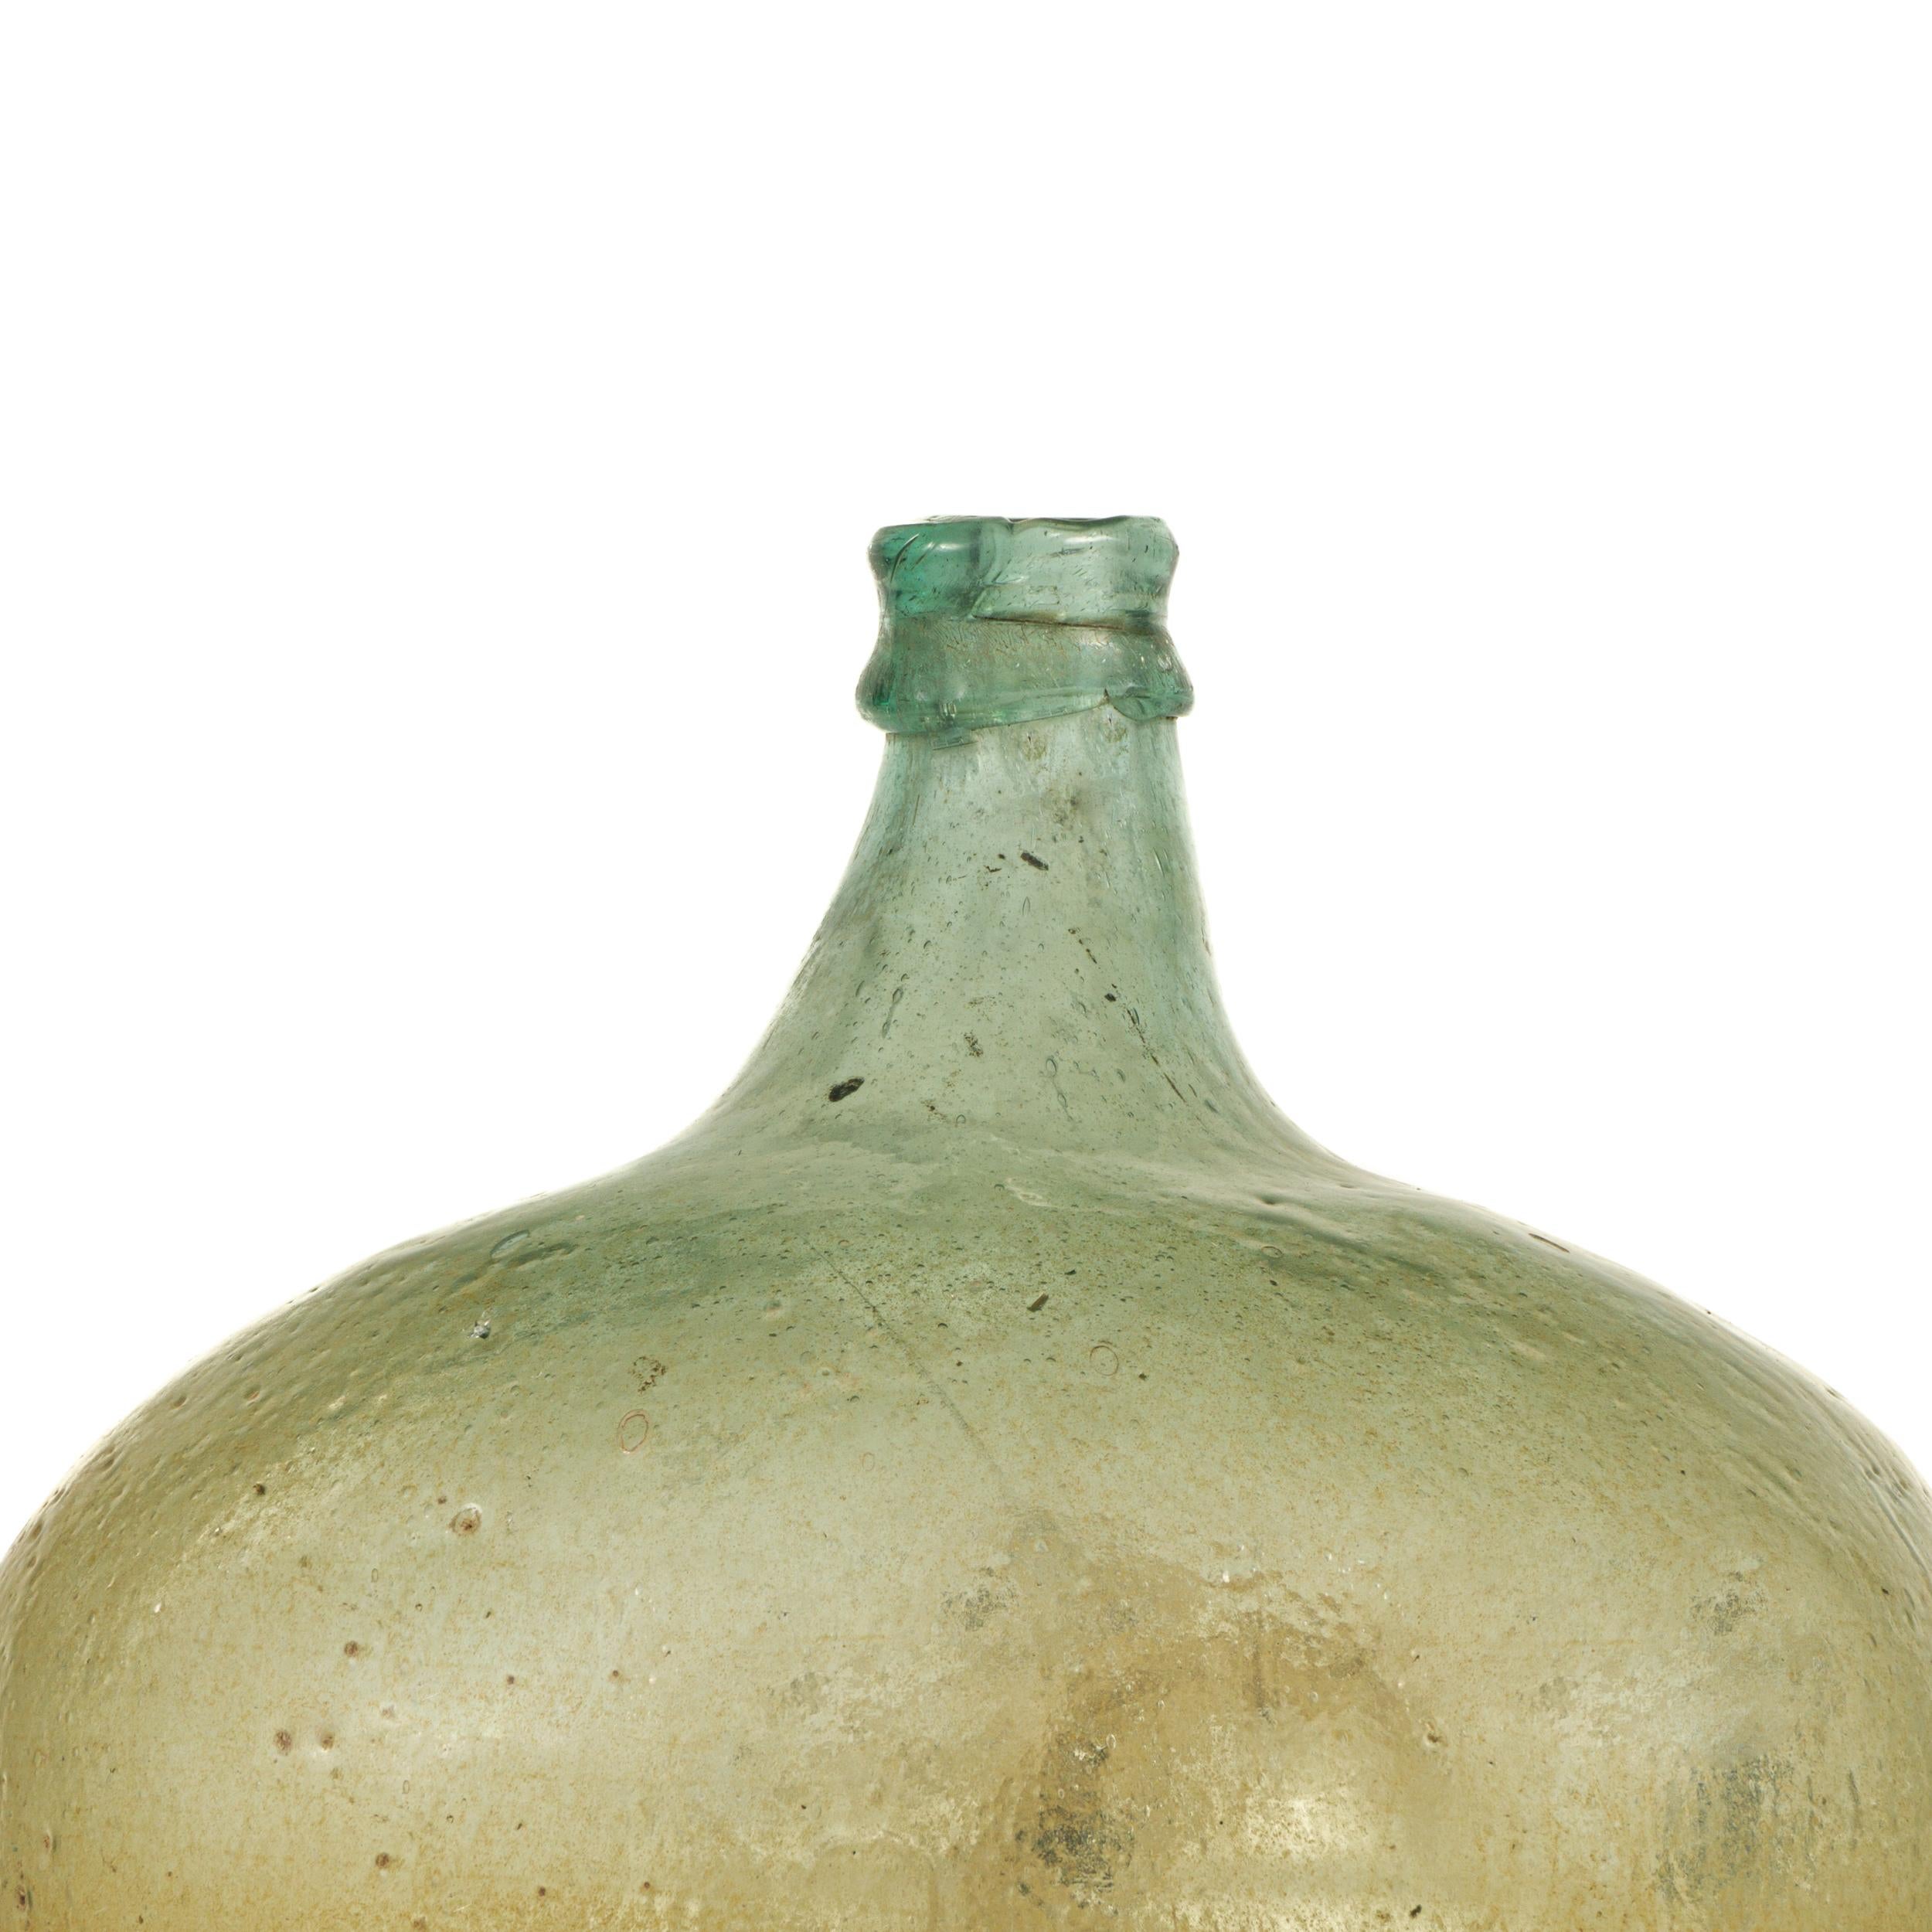 Demijohn en verre vert soufflé à la bouche, datant de la fin du 19e siècle et provenant du sud du Mexique.
Utilisé à l'origine comme conteneur traditionnel, principalement pour le stockage et le transport du vin.
Aujourd'hui, ils peuvent être